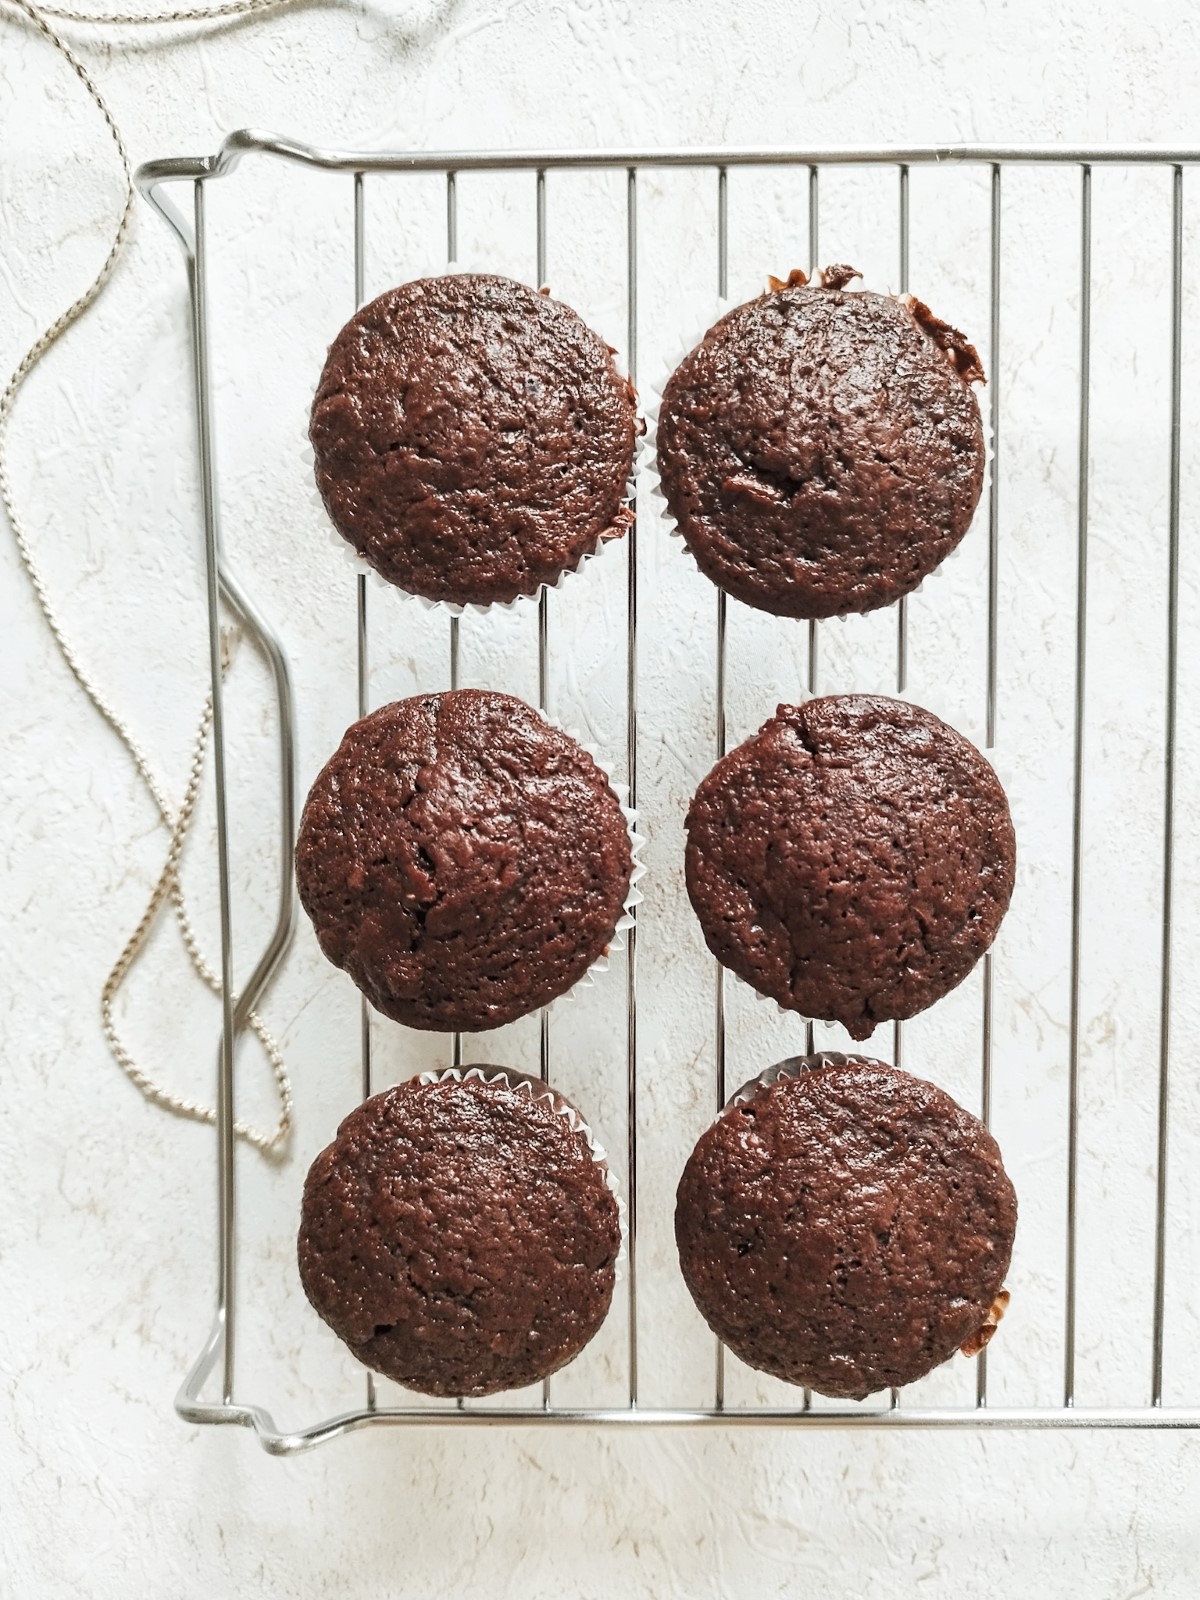 Zucchini-Muffins mit Schokolade - Title of the Recipe